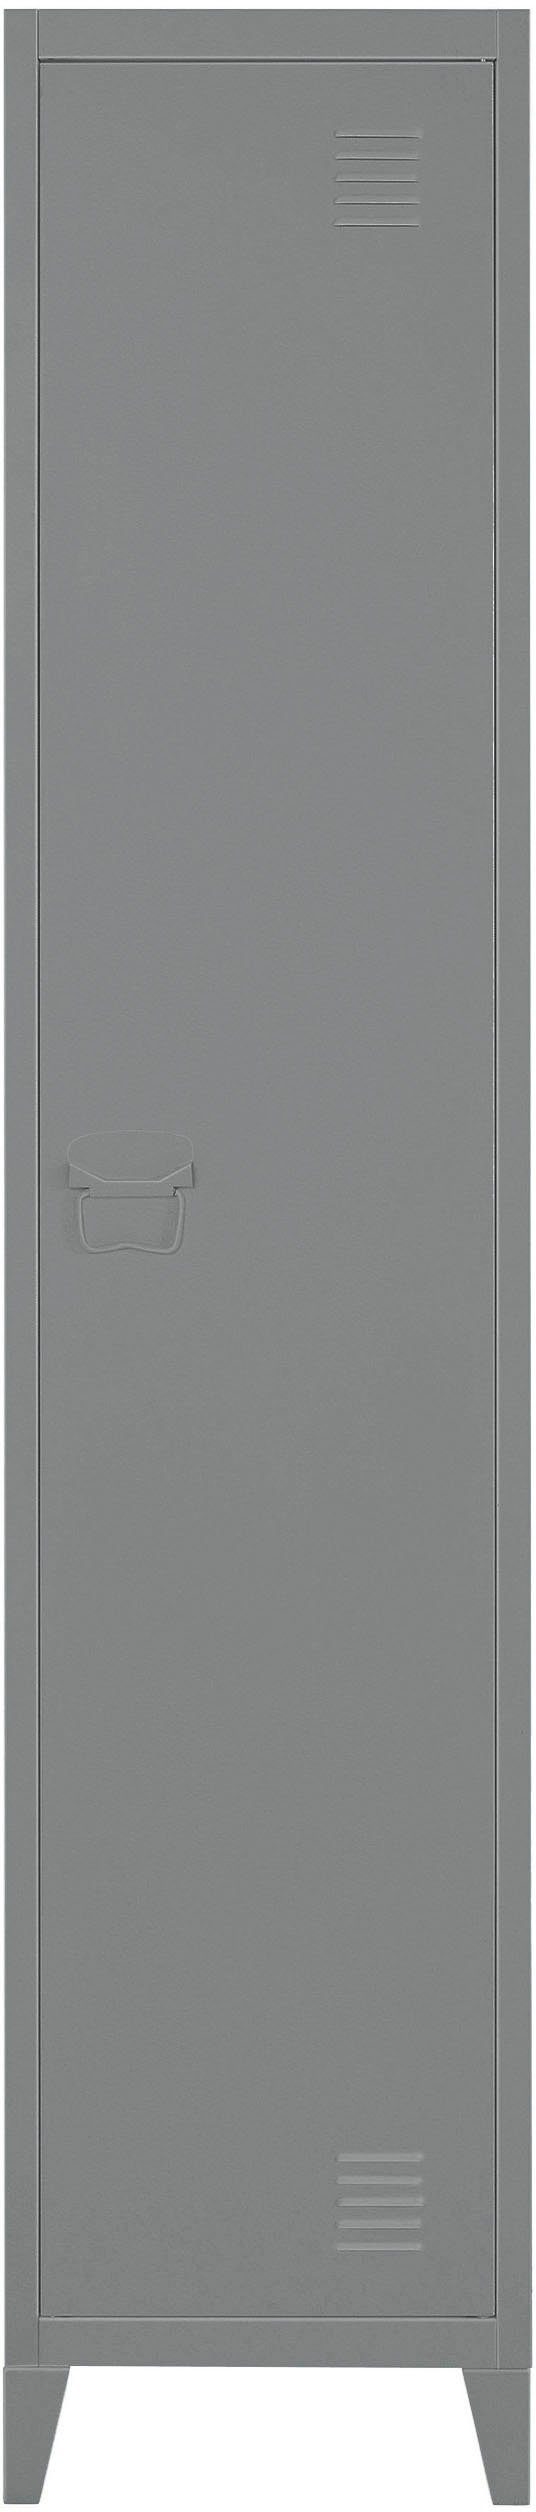 aus x Jensjorg 2 Hochschrank Höhe Metall, grau Tür, Hochschrank Einlegeböden andas 180 cm hinter der